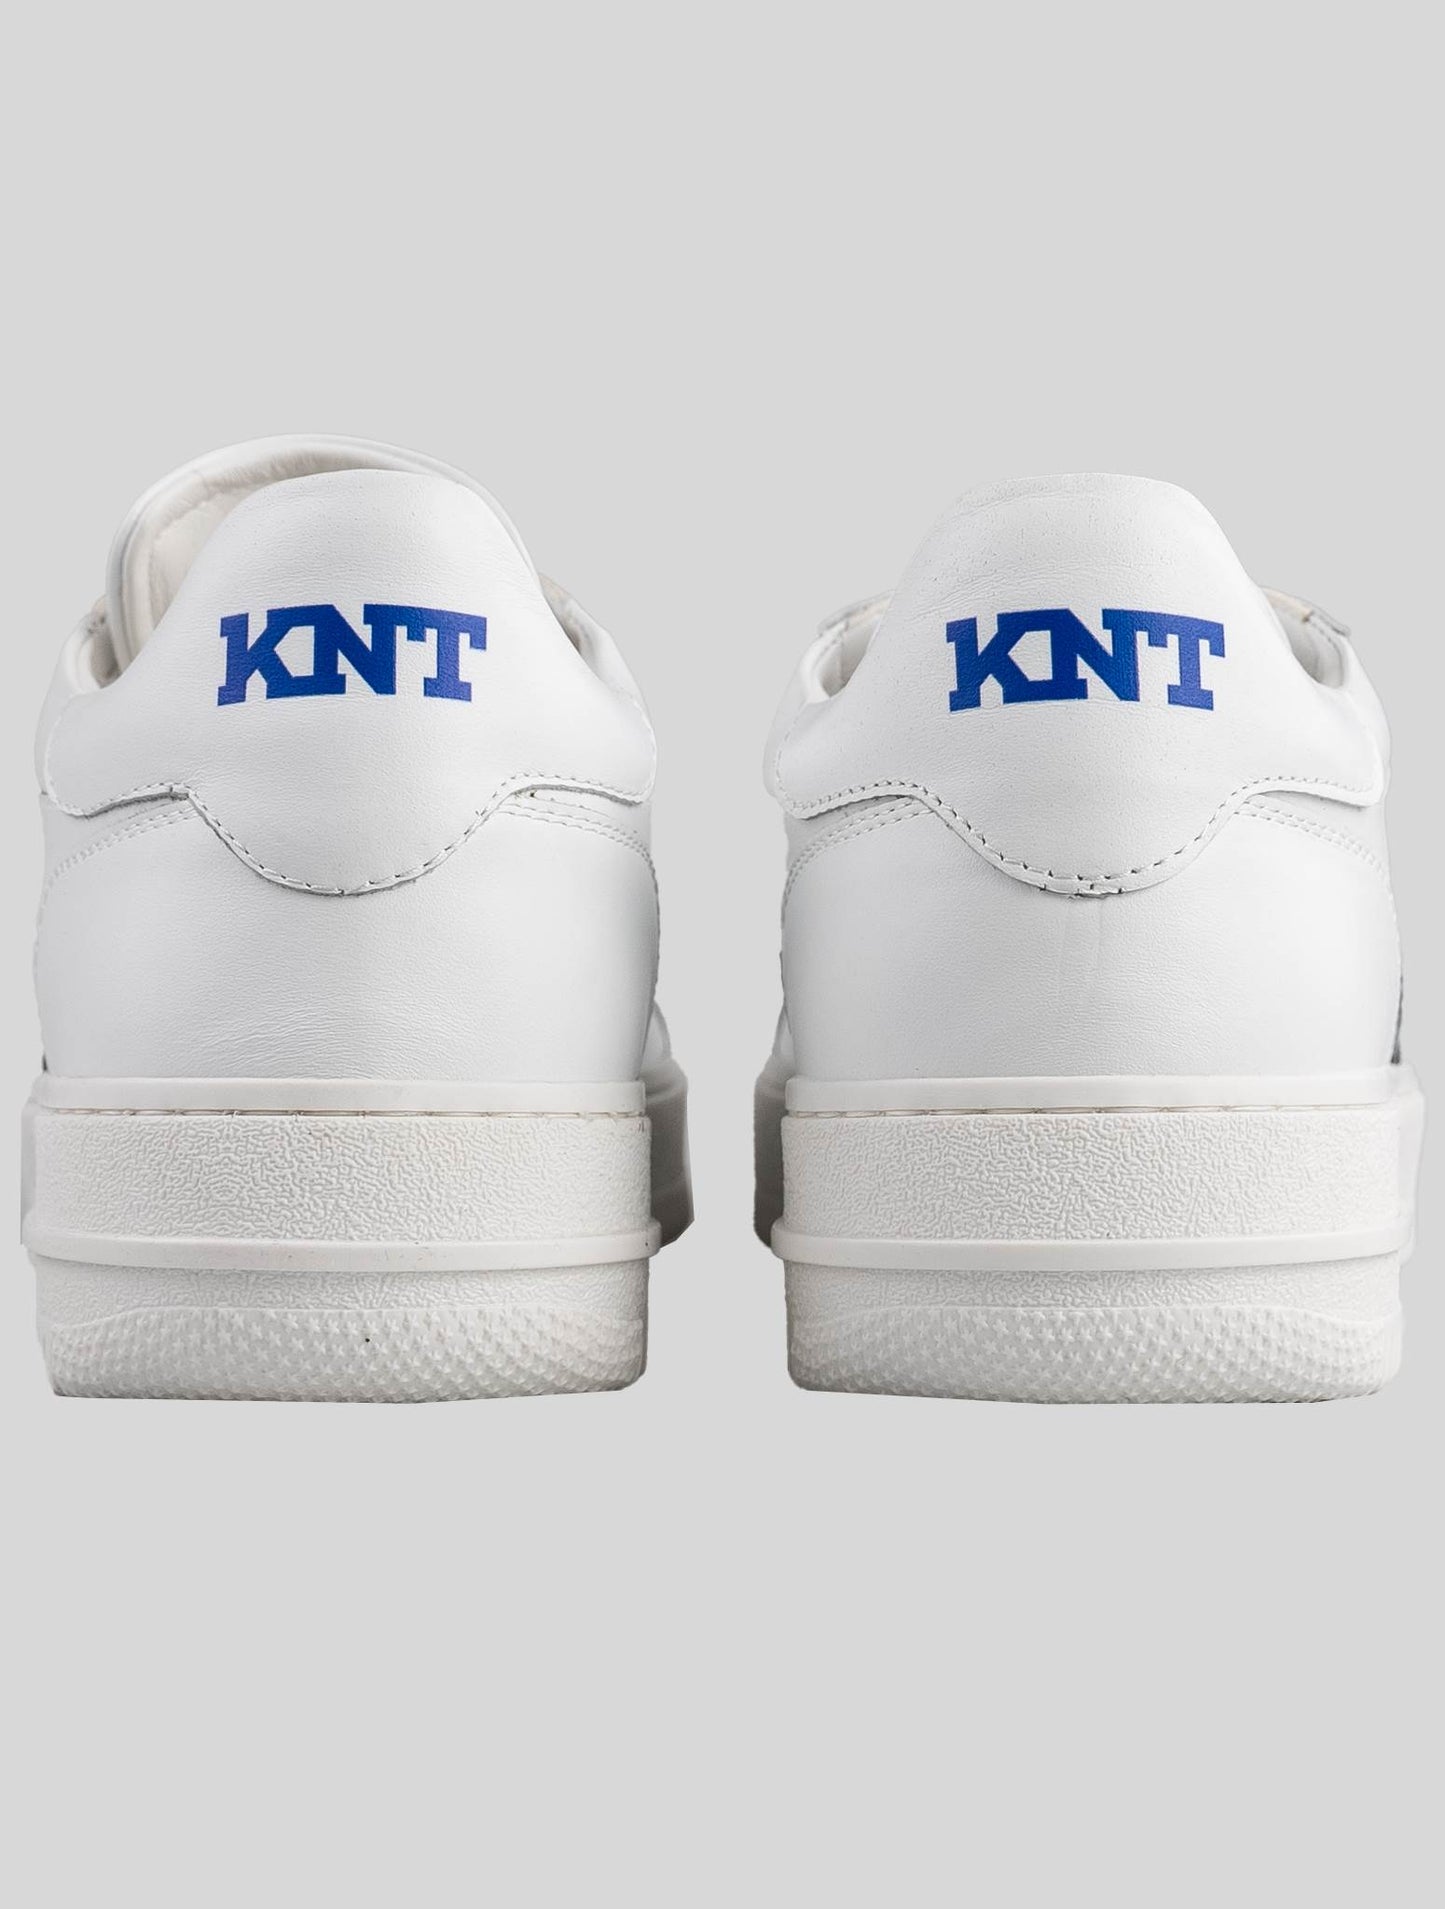 KNT Kiton 白色皮革运动鞋特别版